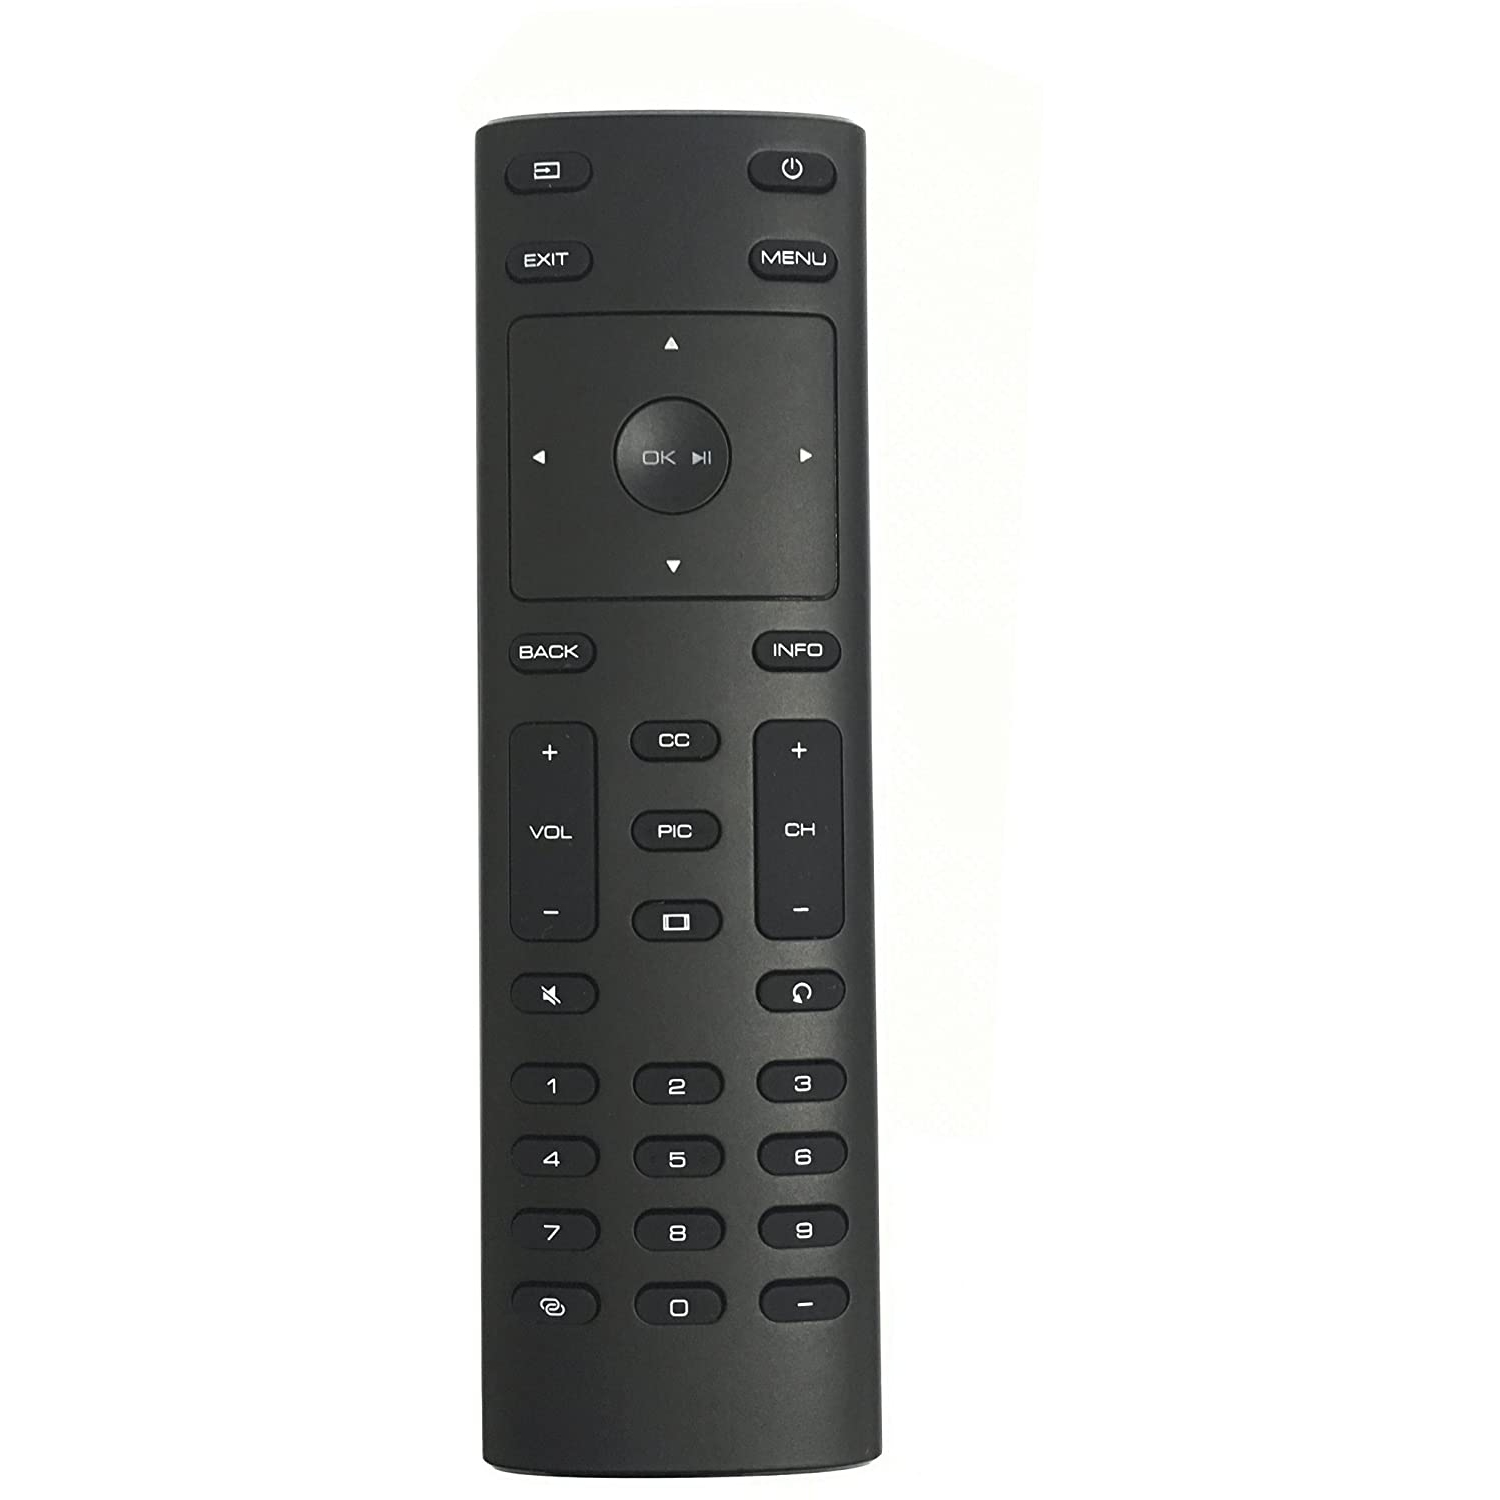 New XRT135 TV Remote fit for VIZIO HDTV D32f-F1 E43-E2 E50-E1 E65-E3 E75-E3 E80-E3 M50-E1 M55-E0 M65-E0 M70-E3 M75-E1